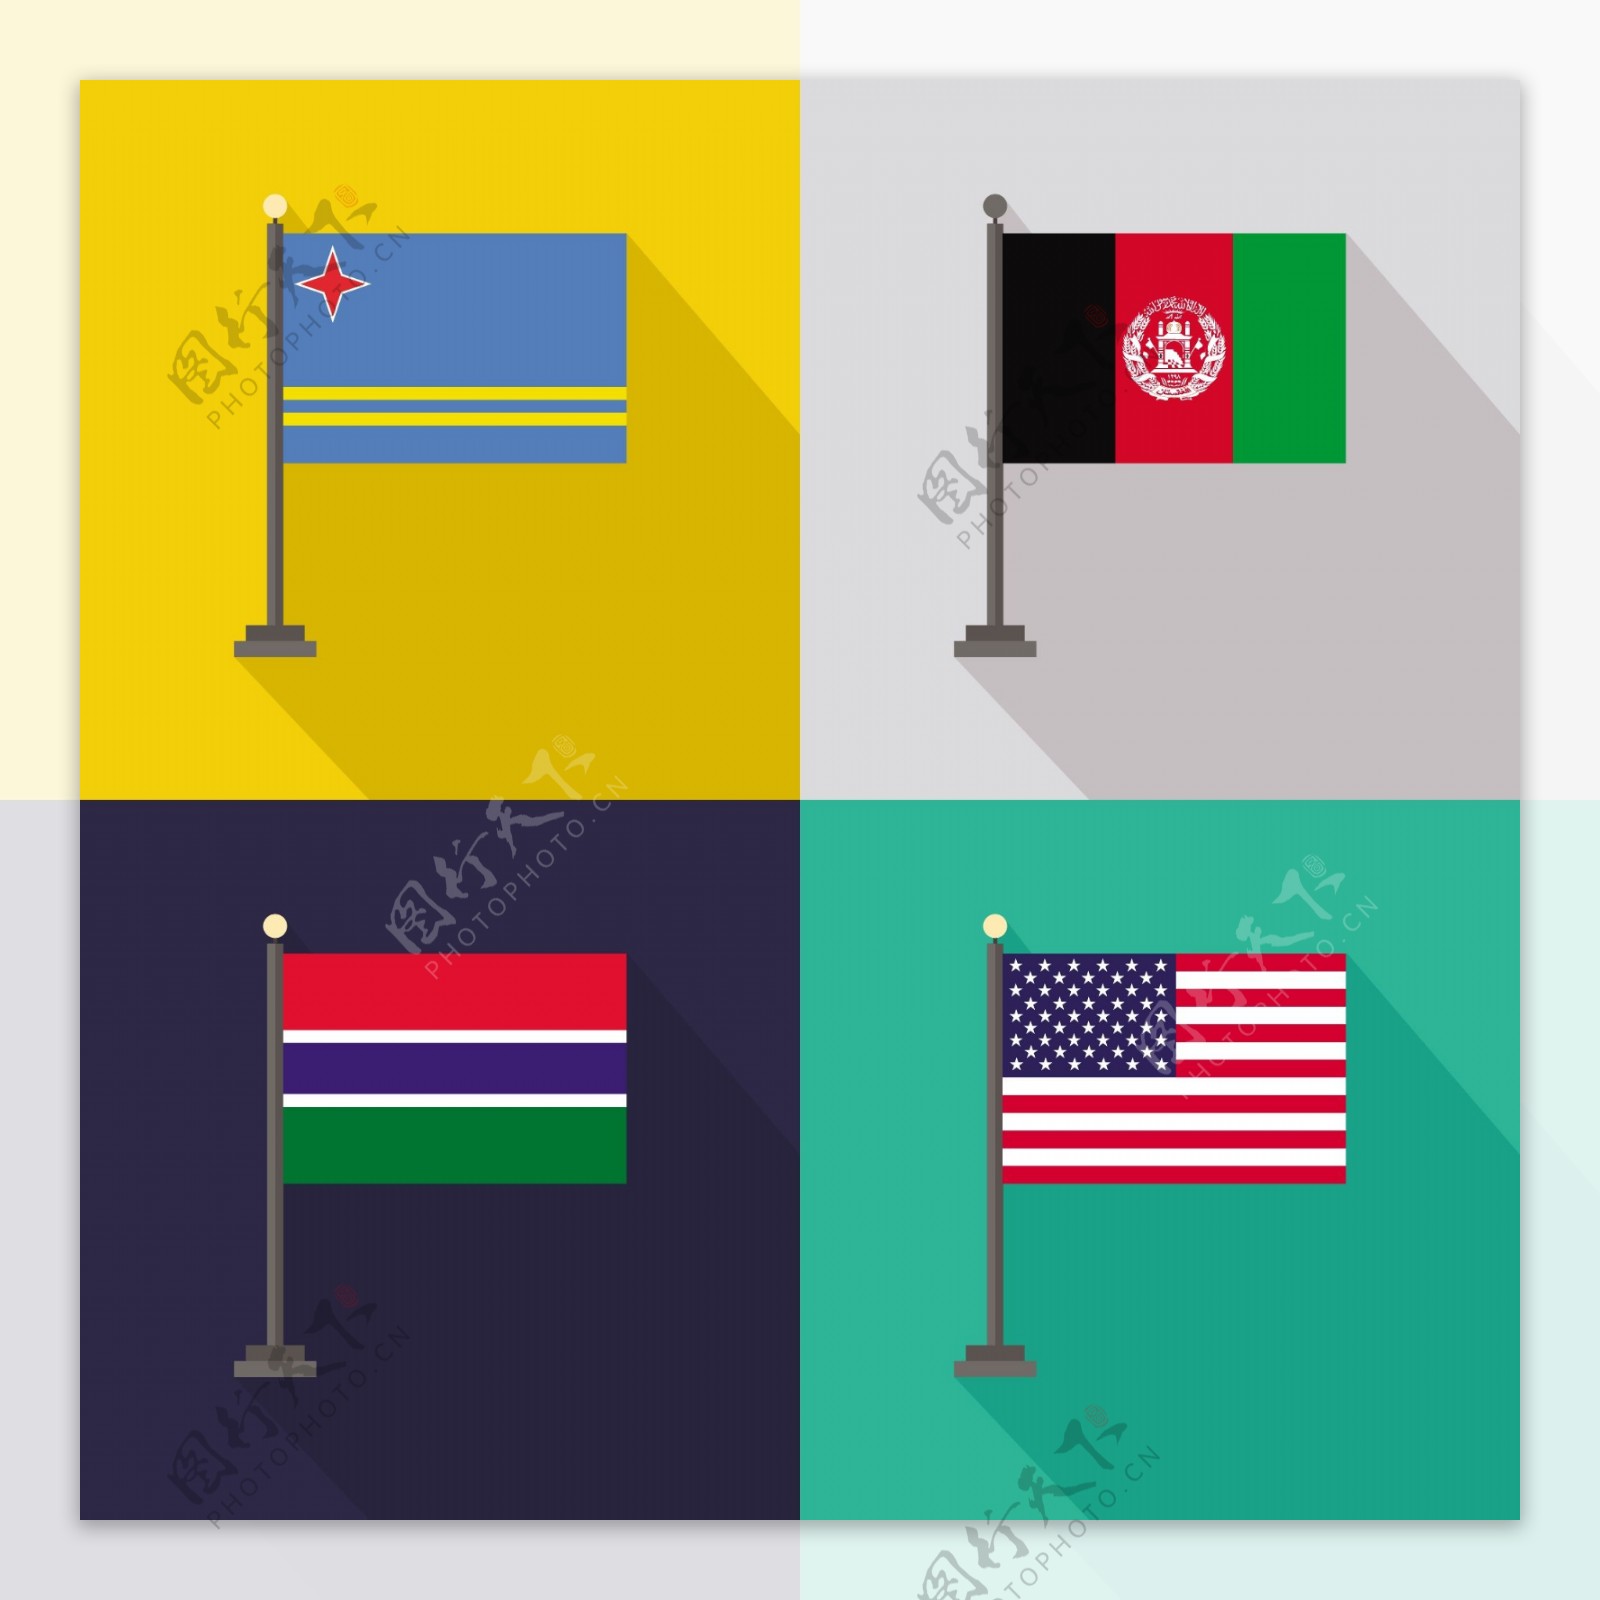 阿鲁巴阿富汗冈比亚和美国的美国国旗